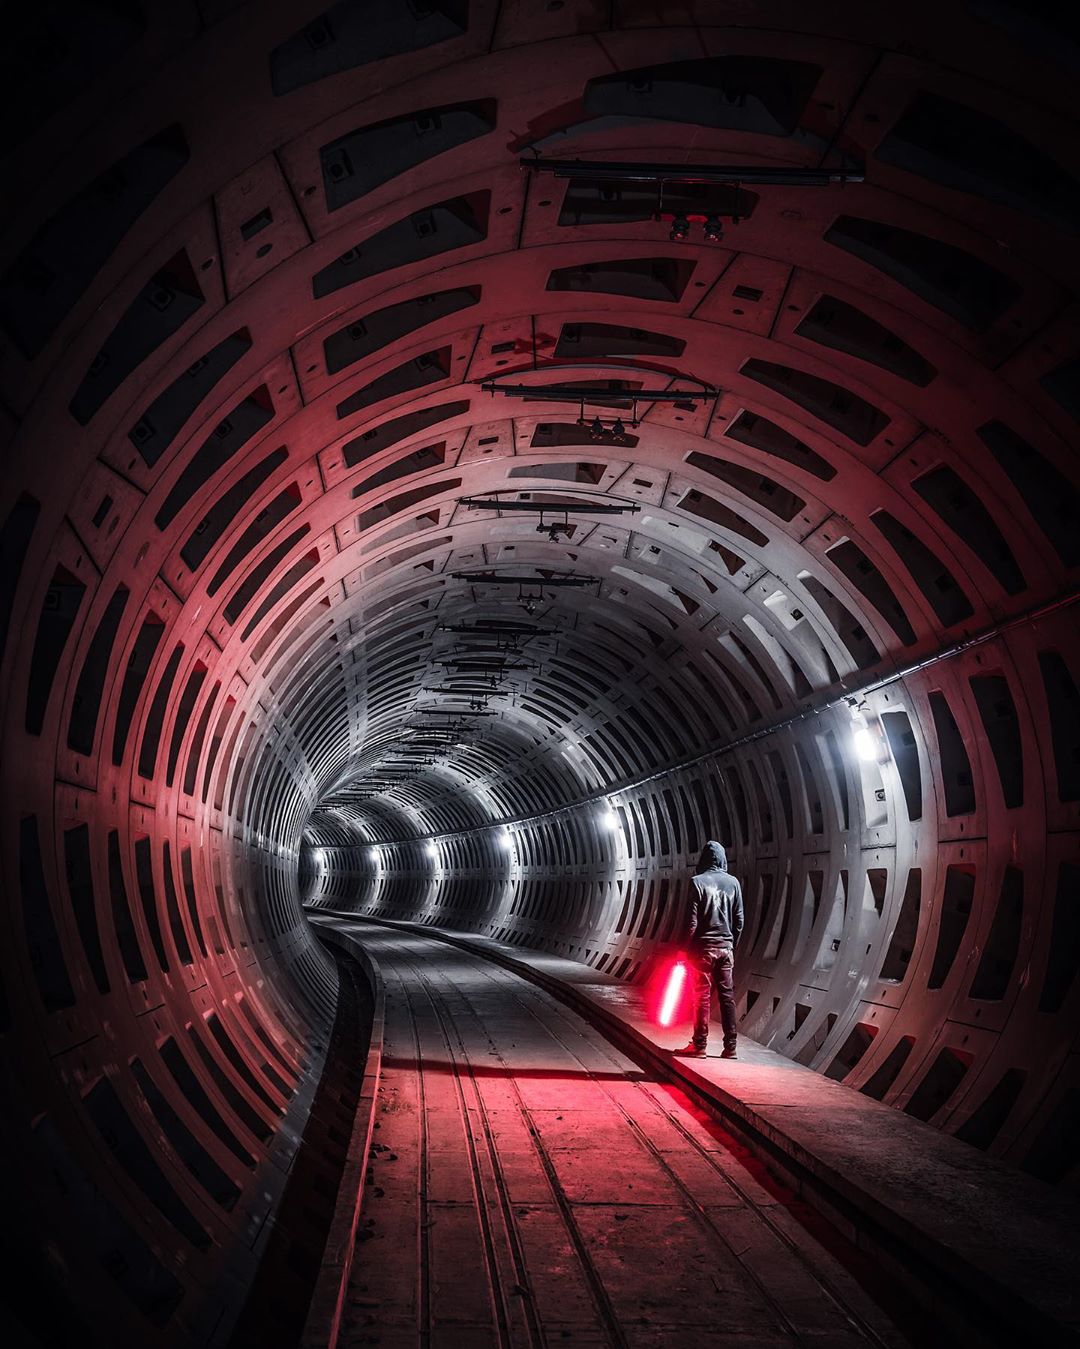 «Тёмная сторона» городов на концептуальных снимках Йеруна ван Дама города,подземка,тревел-фото